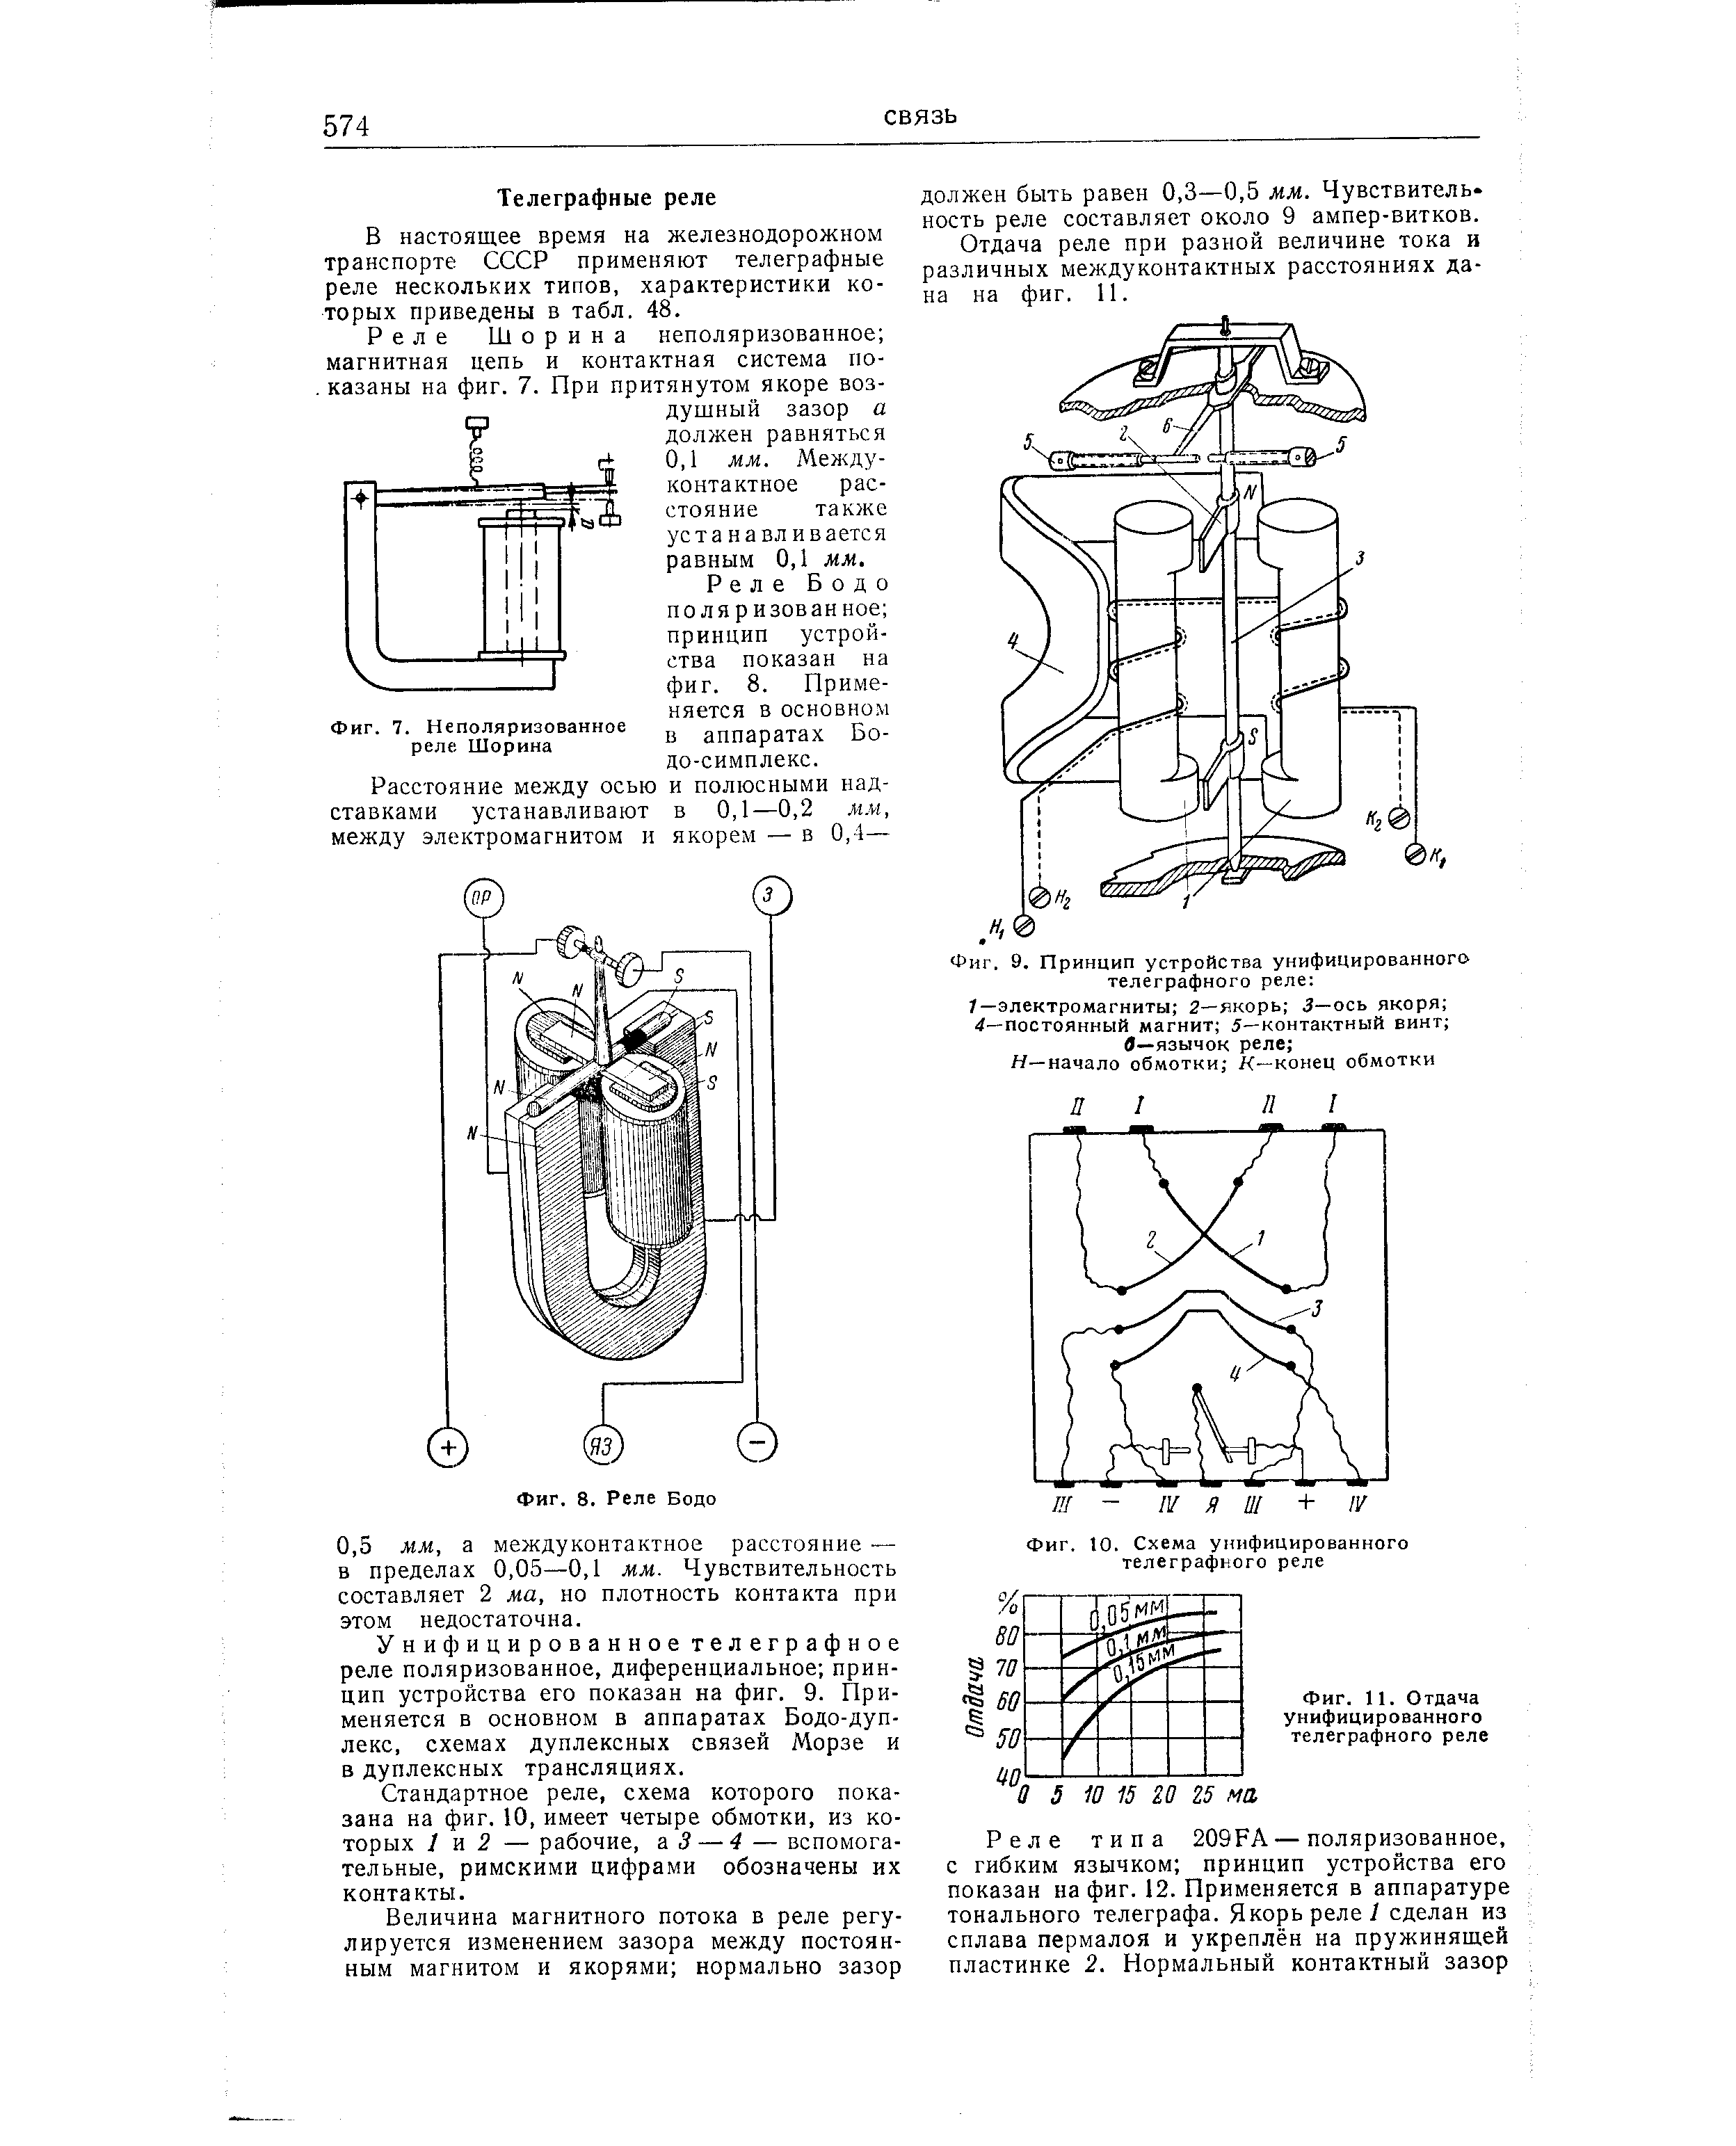 Фиг. 10. Схема унифицированного телеграфного реле
